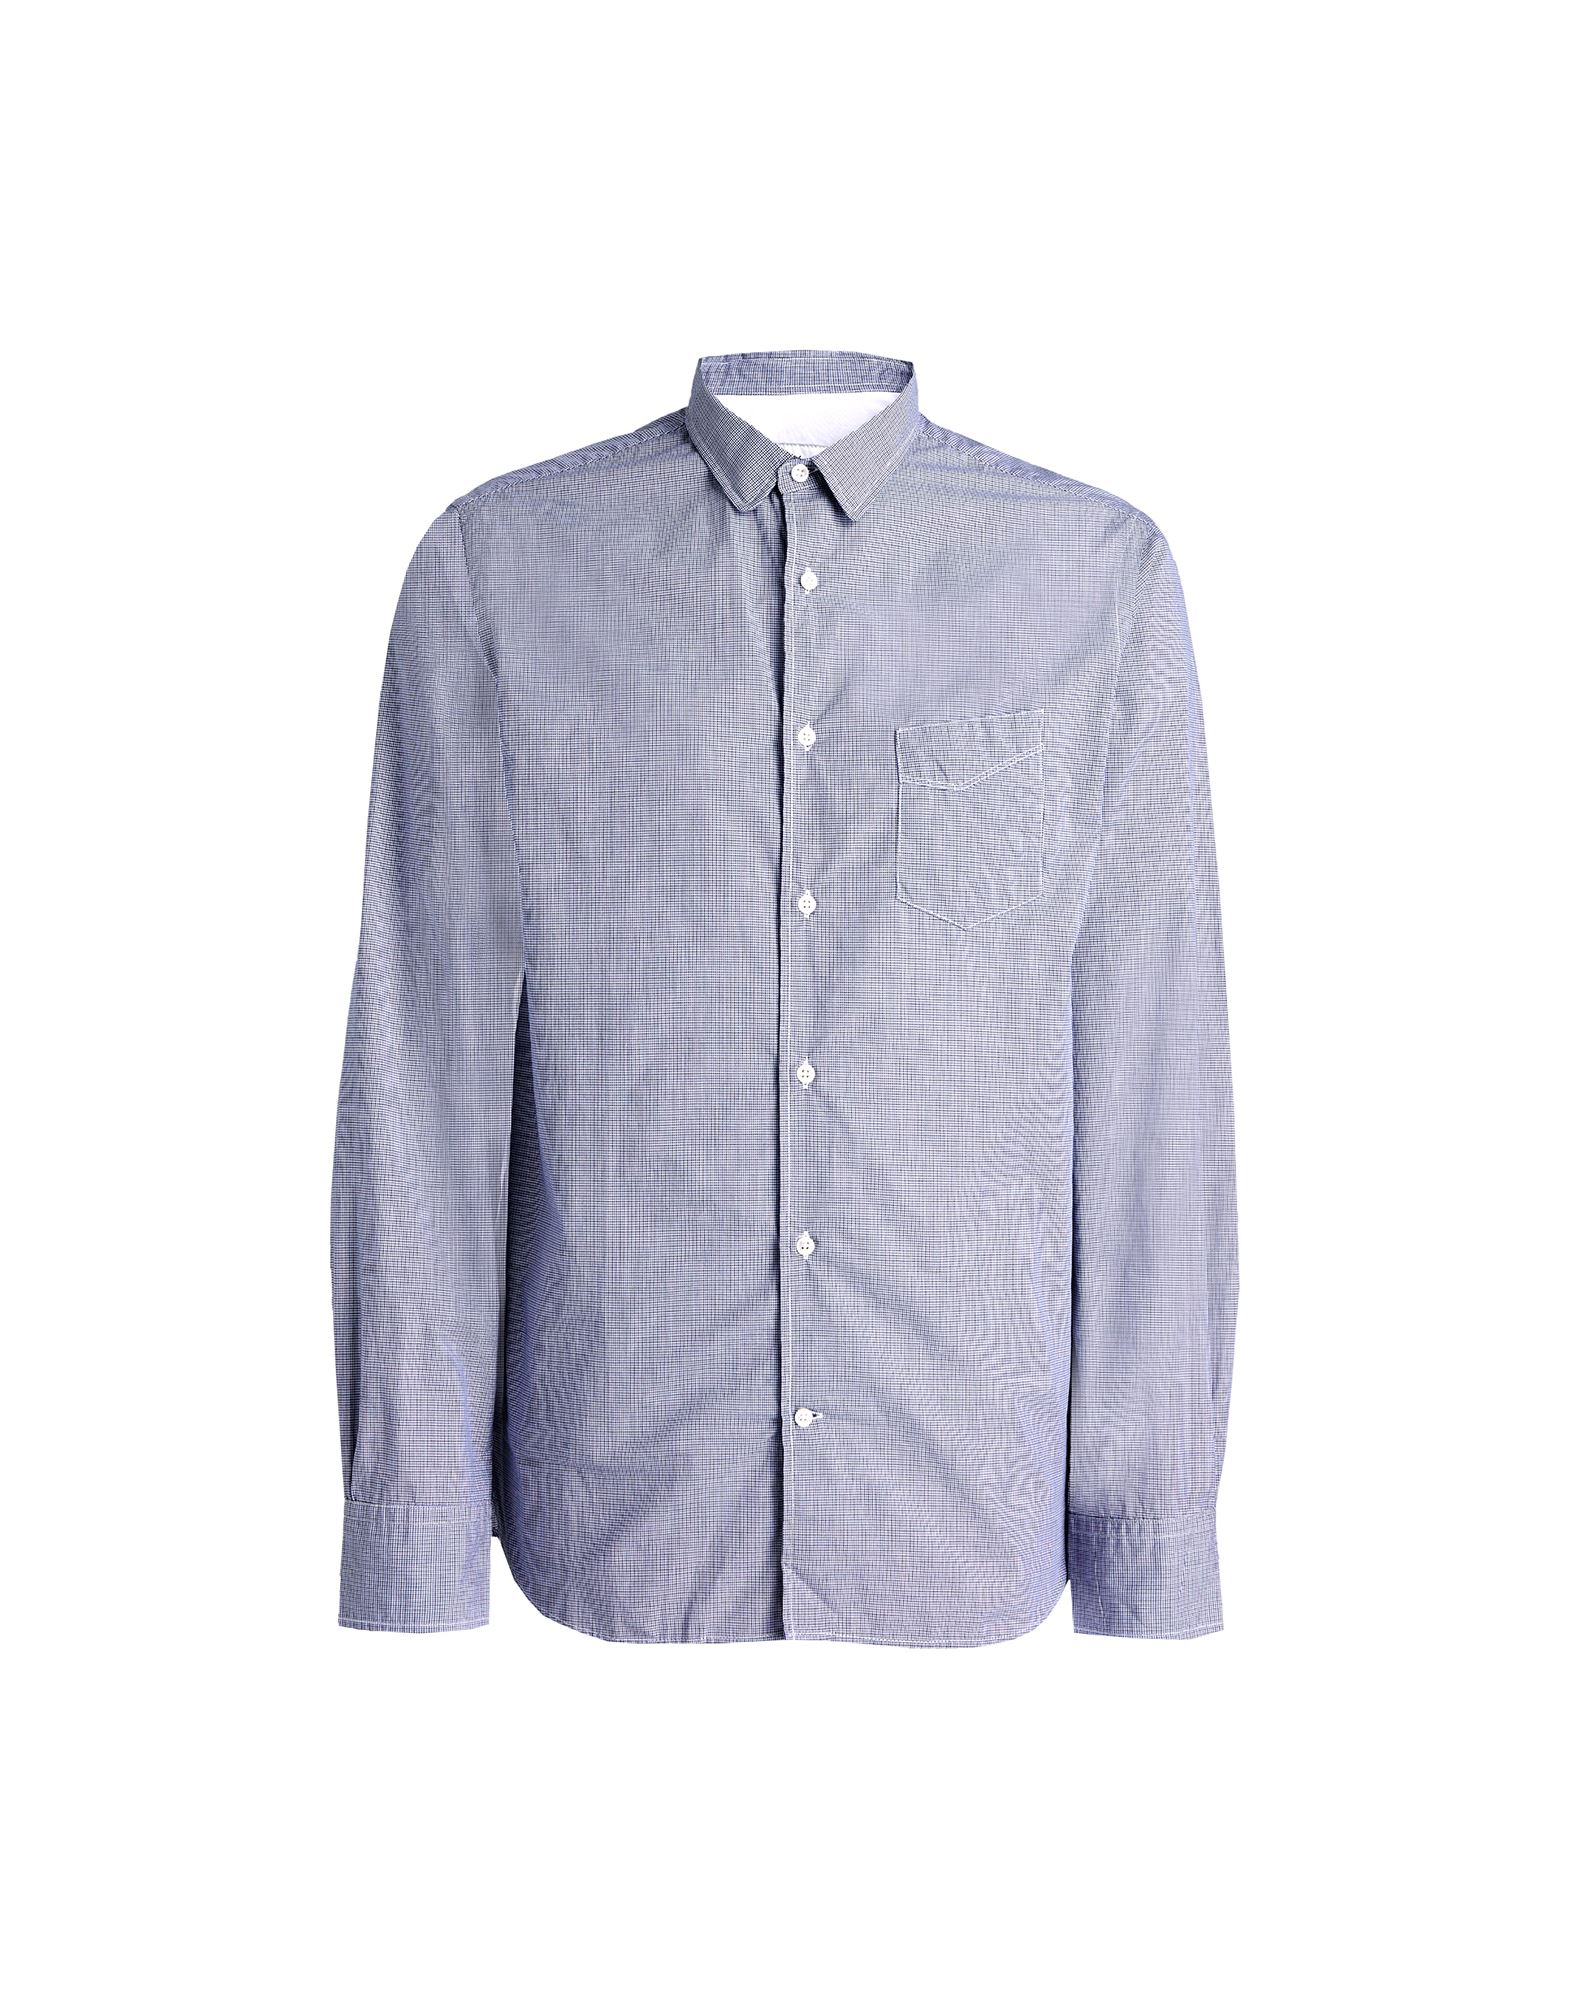 Officine Generale Dante Long Sleeve Cotton Shirt In Slate Blue